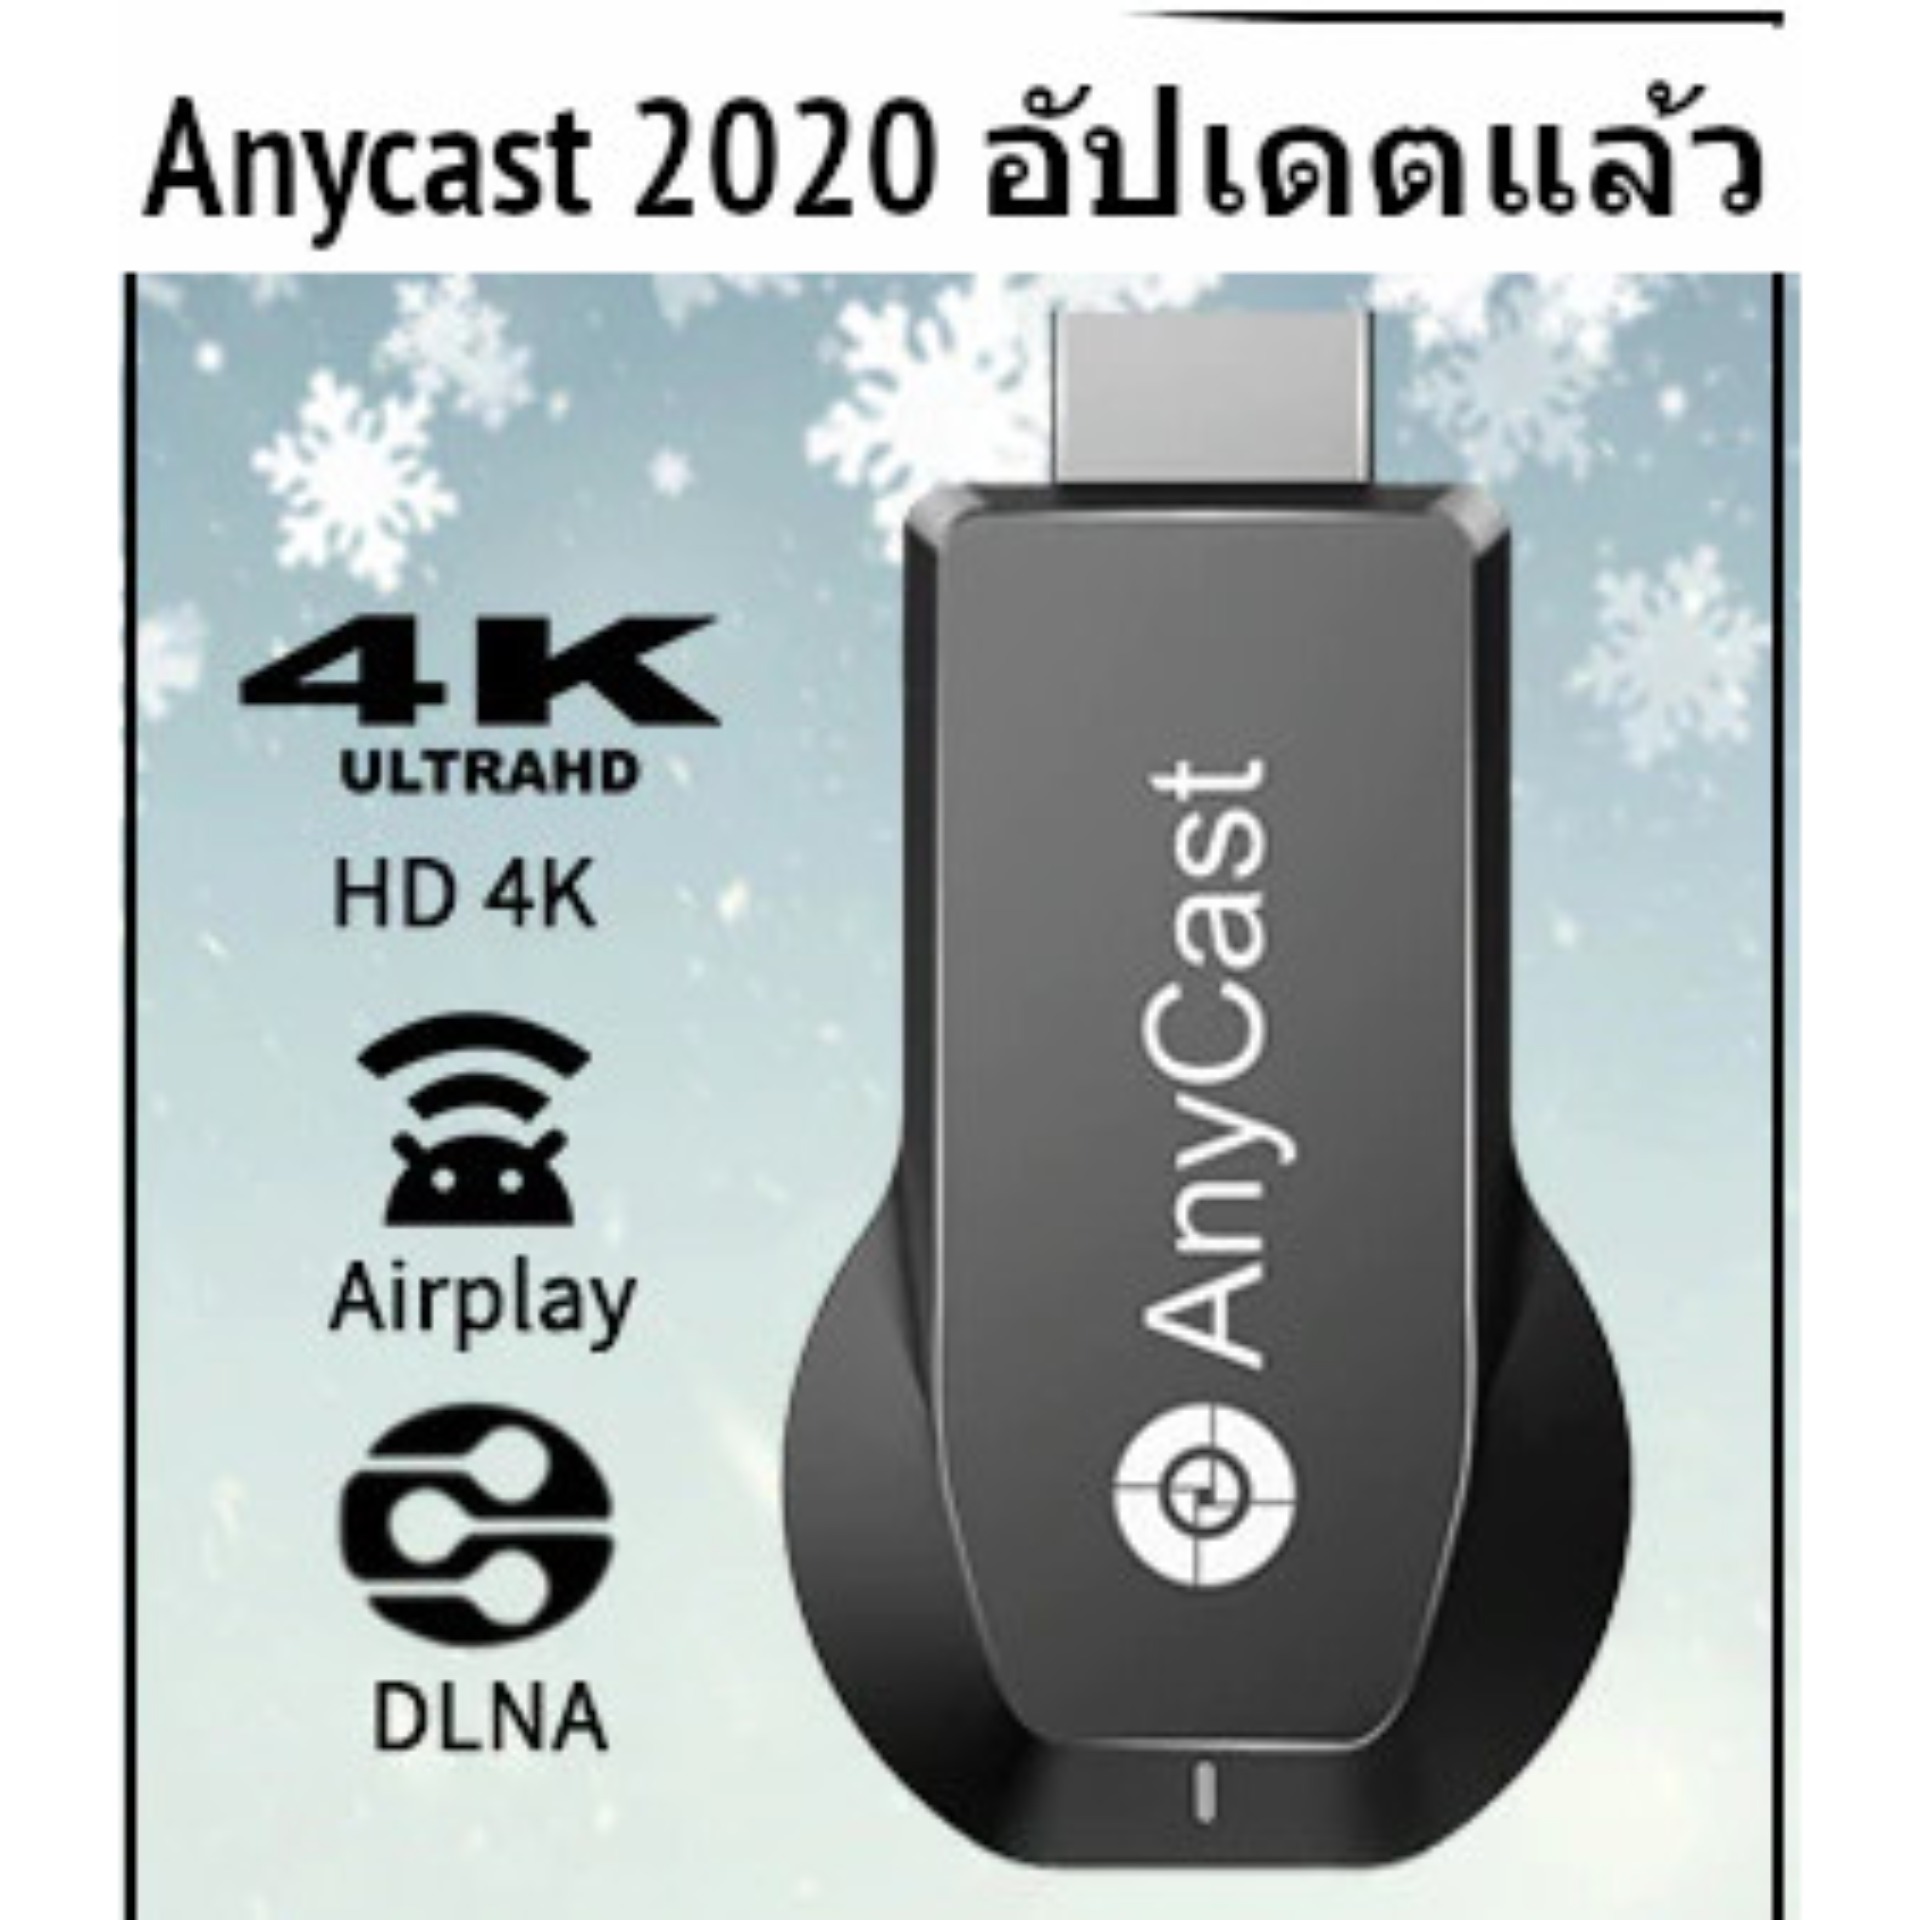 HDMI ไร้สาย Anycast® M12 Plus HDMI WIFI Display ตัวใหม่ 2020! ของแท้ 100% มีประกัน !!! รุ่นใหม่ Update Firmware เป็น 2020 แล้ว !!! ซื้อของปลอมถูกๆไปทำไม